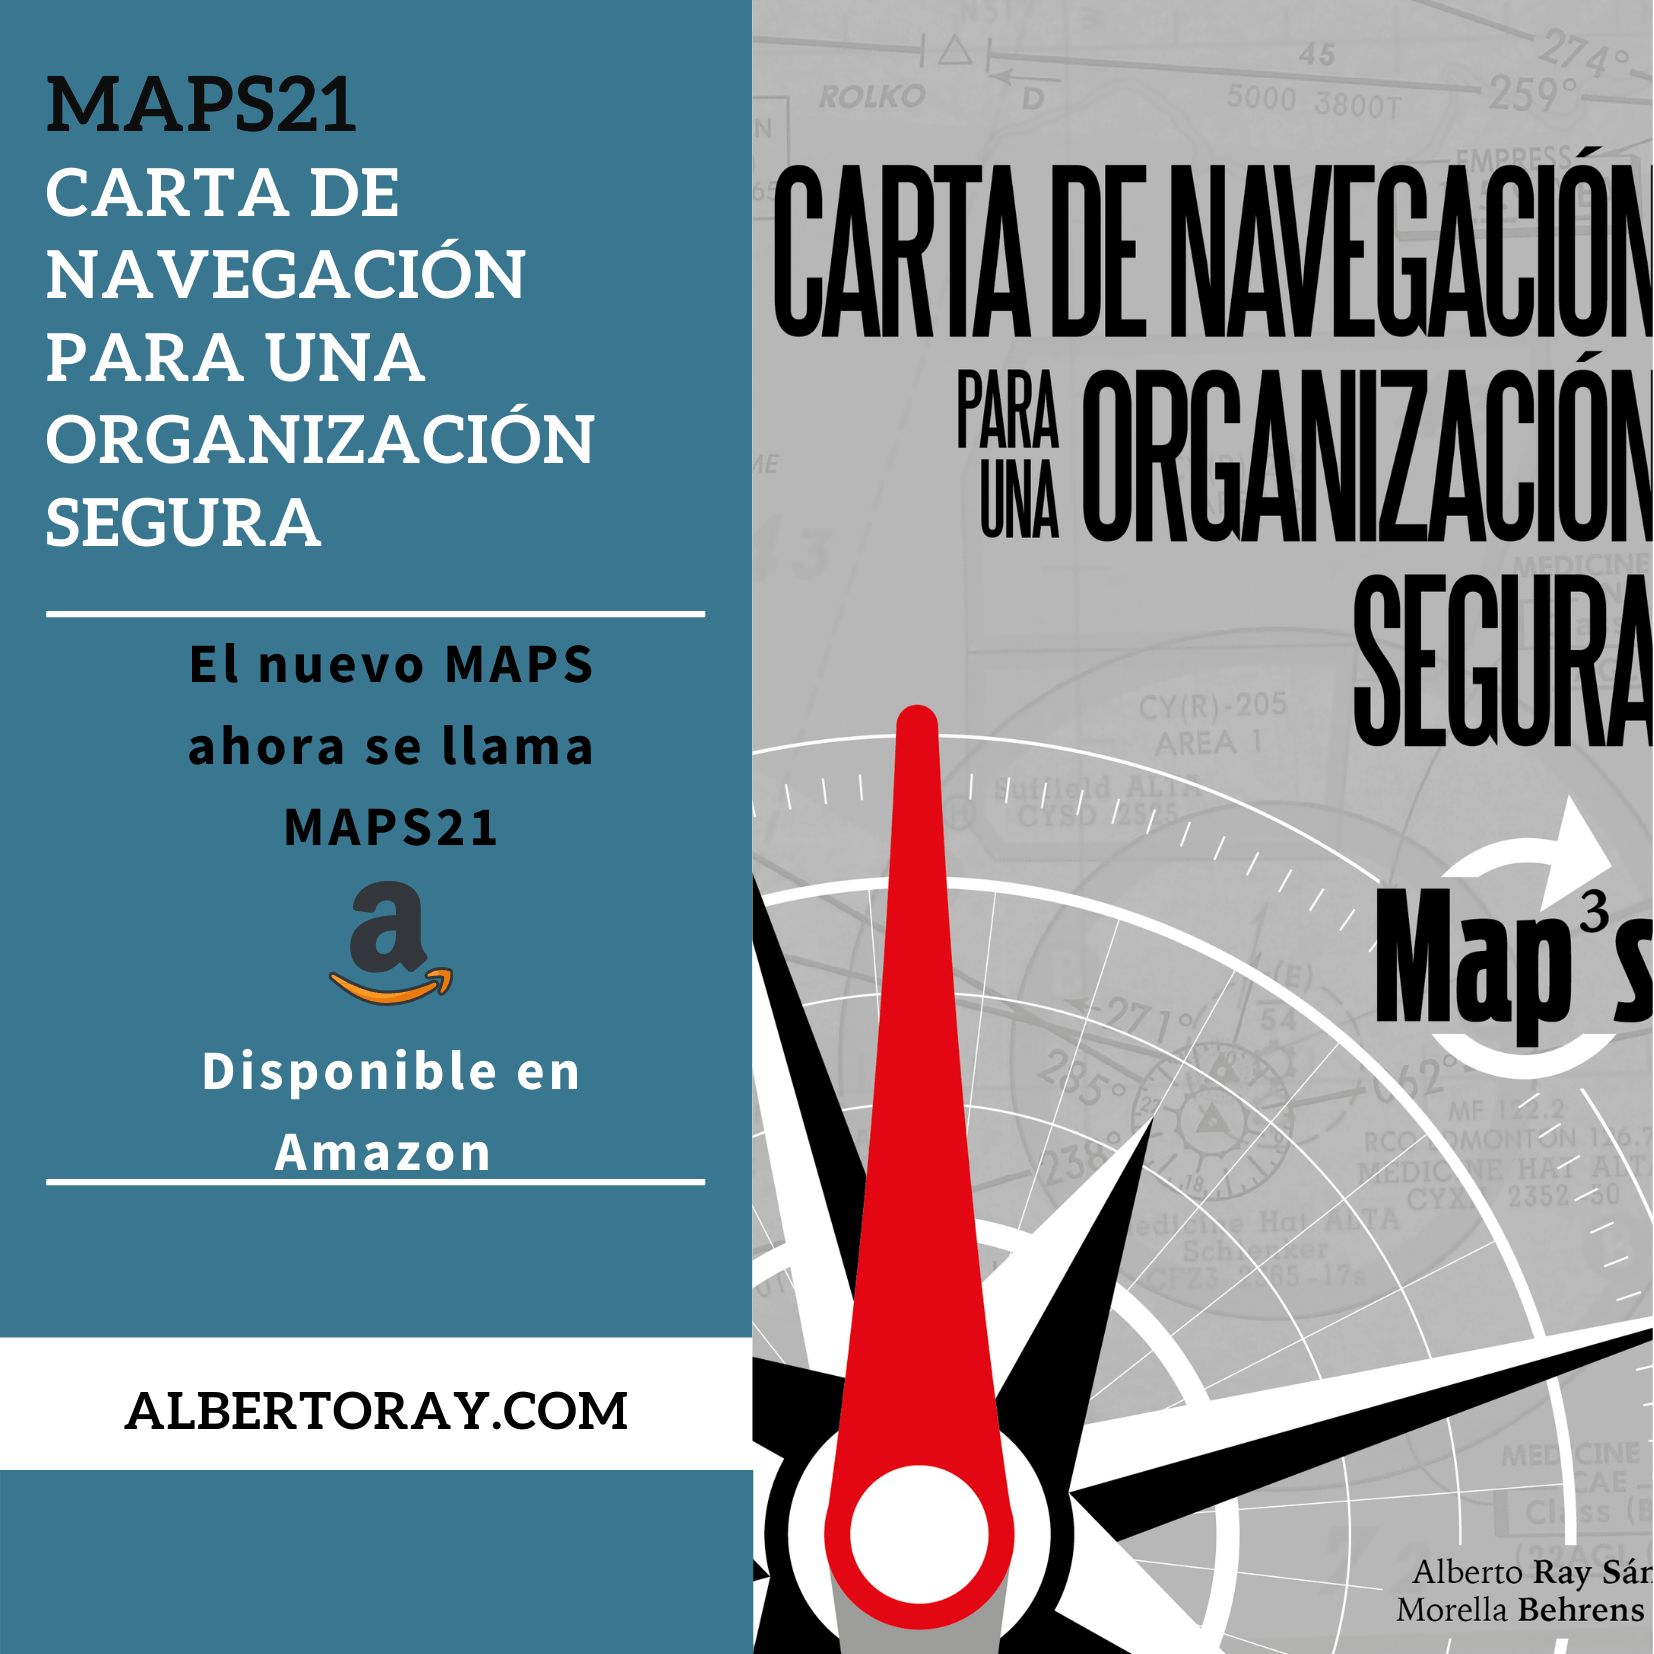 MAPS21 carta de navegación para una organización segura disponible en Amazon